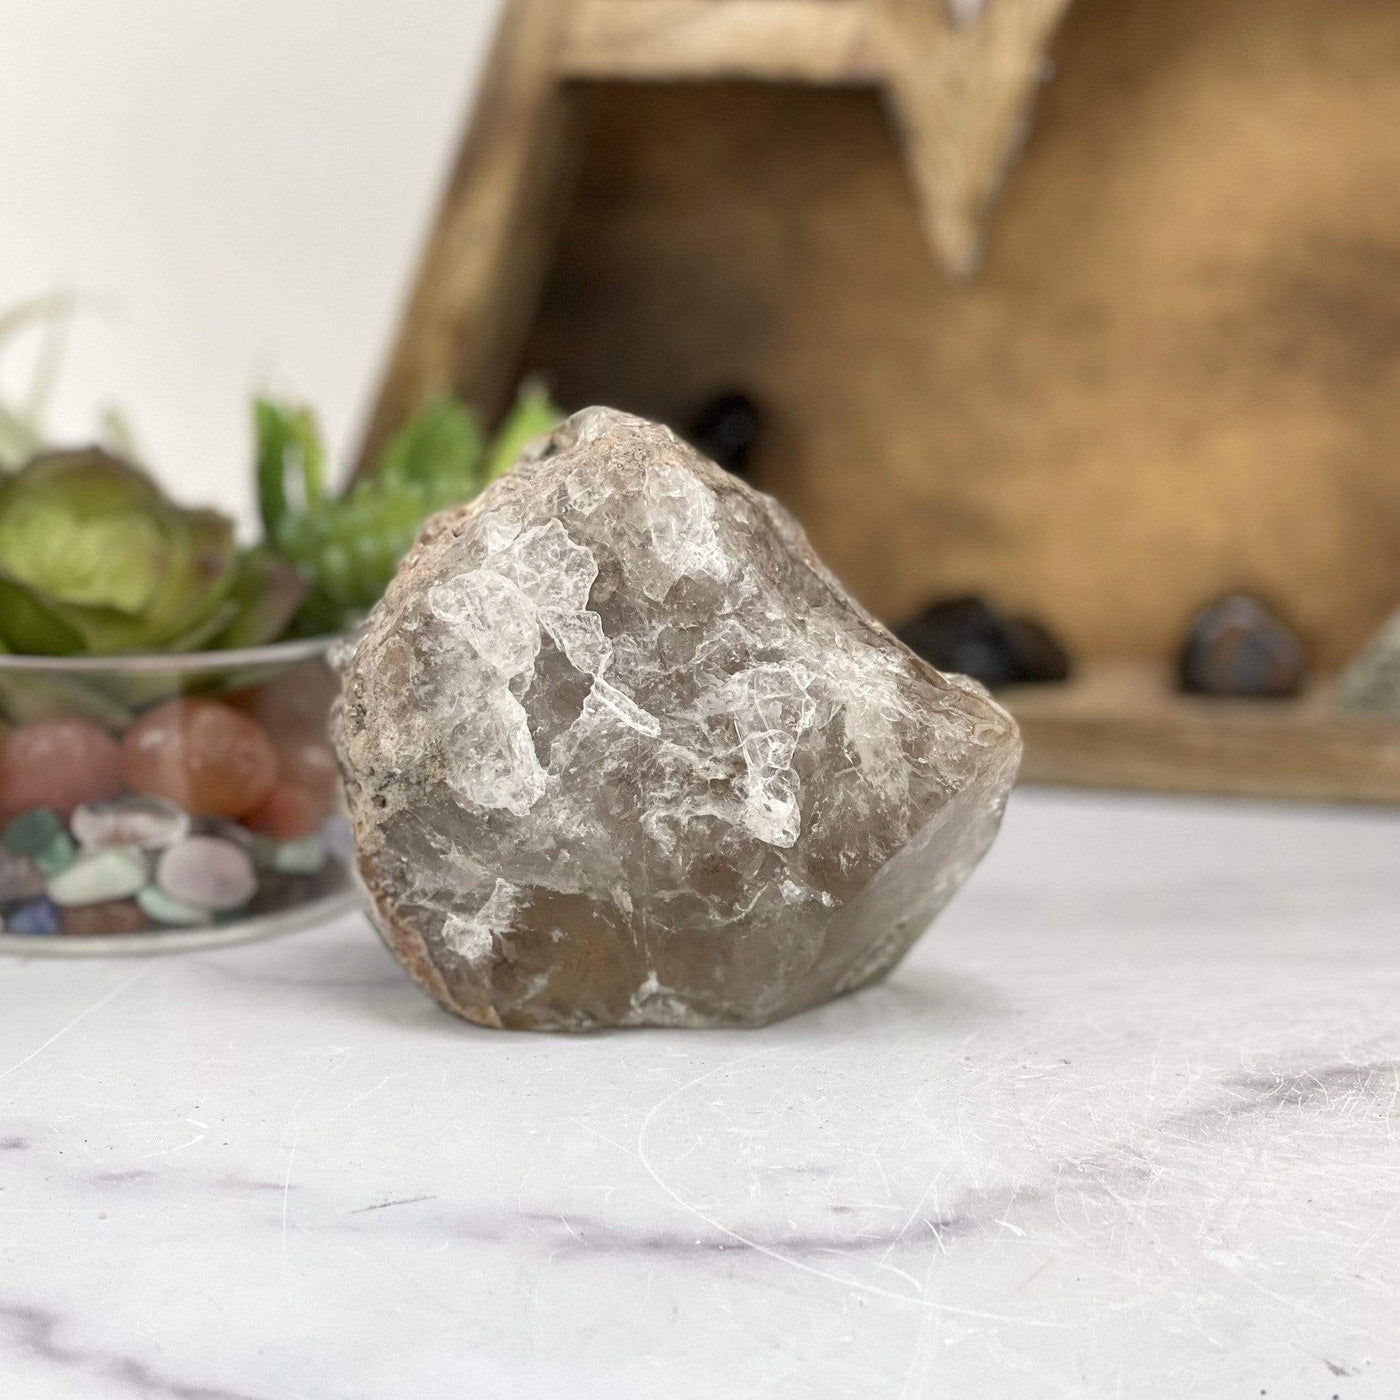 smokey quartz lodalite stone on a gray marble background.